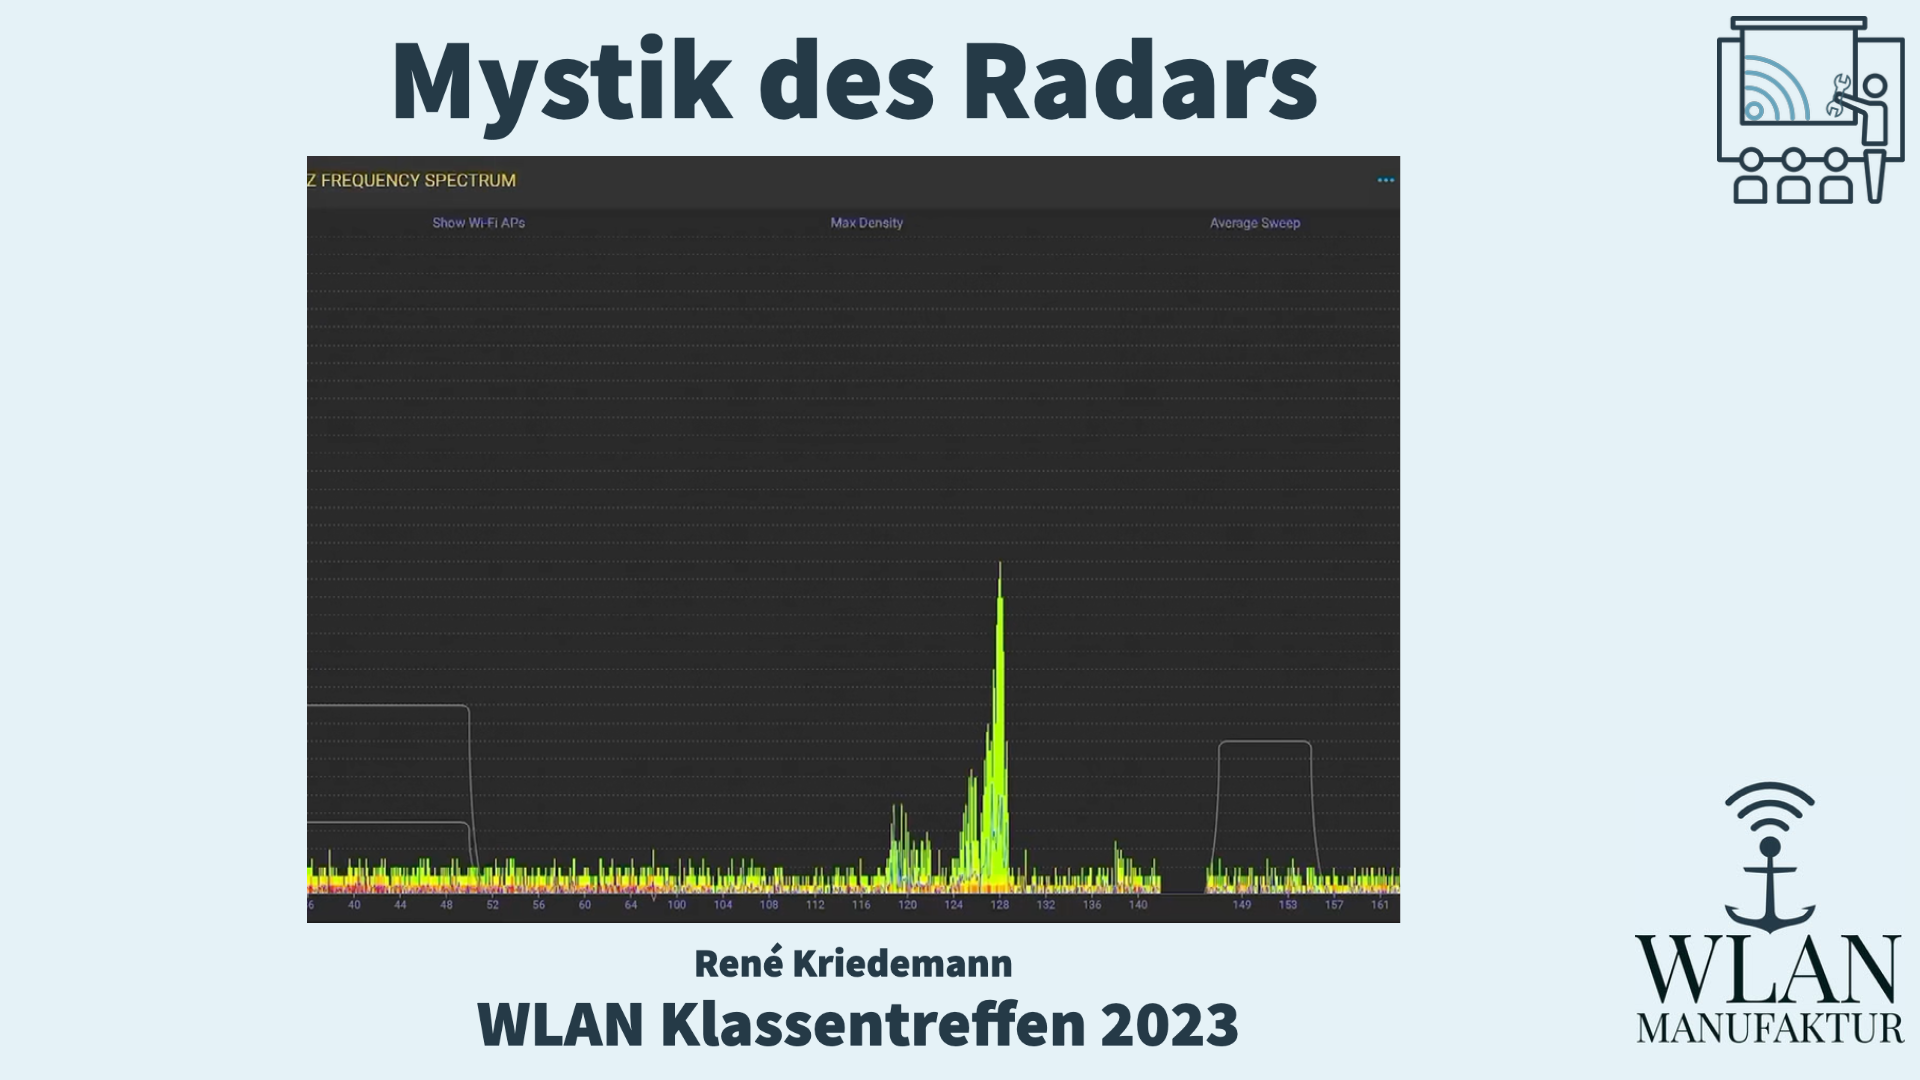 Load video: Aufzeichnung der Präsentation vom WLAN Klassentreffen - Die Mystik des Radars